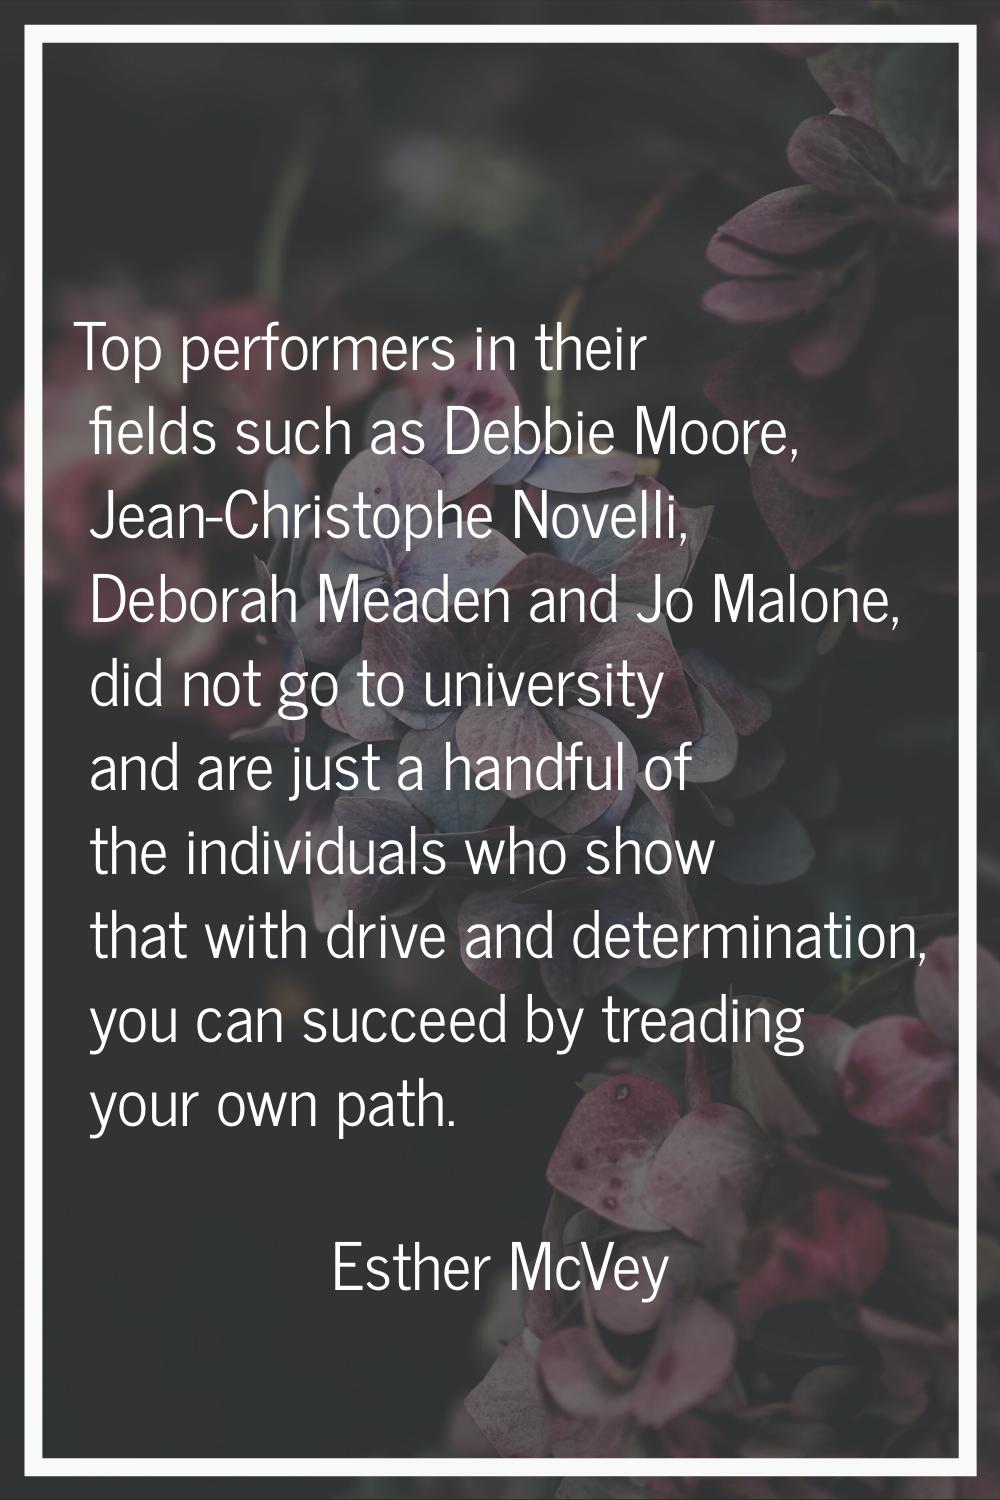 Top performers in their fields such as Debbie Moore, Jean-Christophe Novelli, Deborah Meaden and Jo